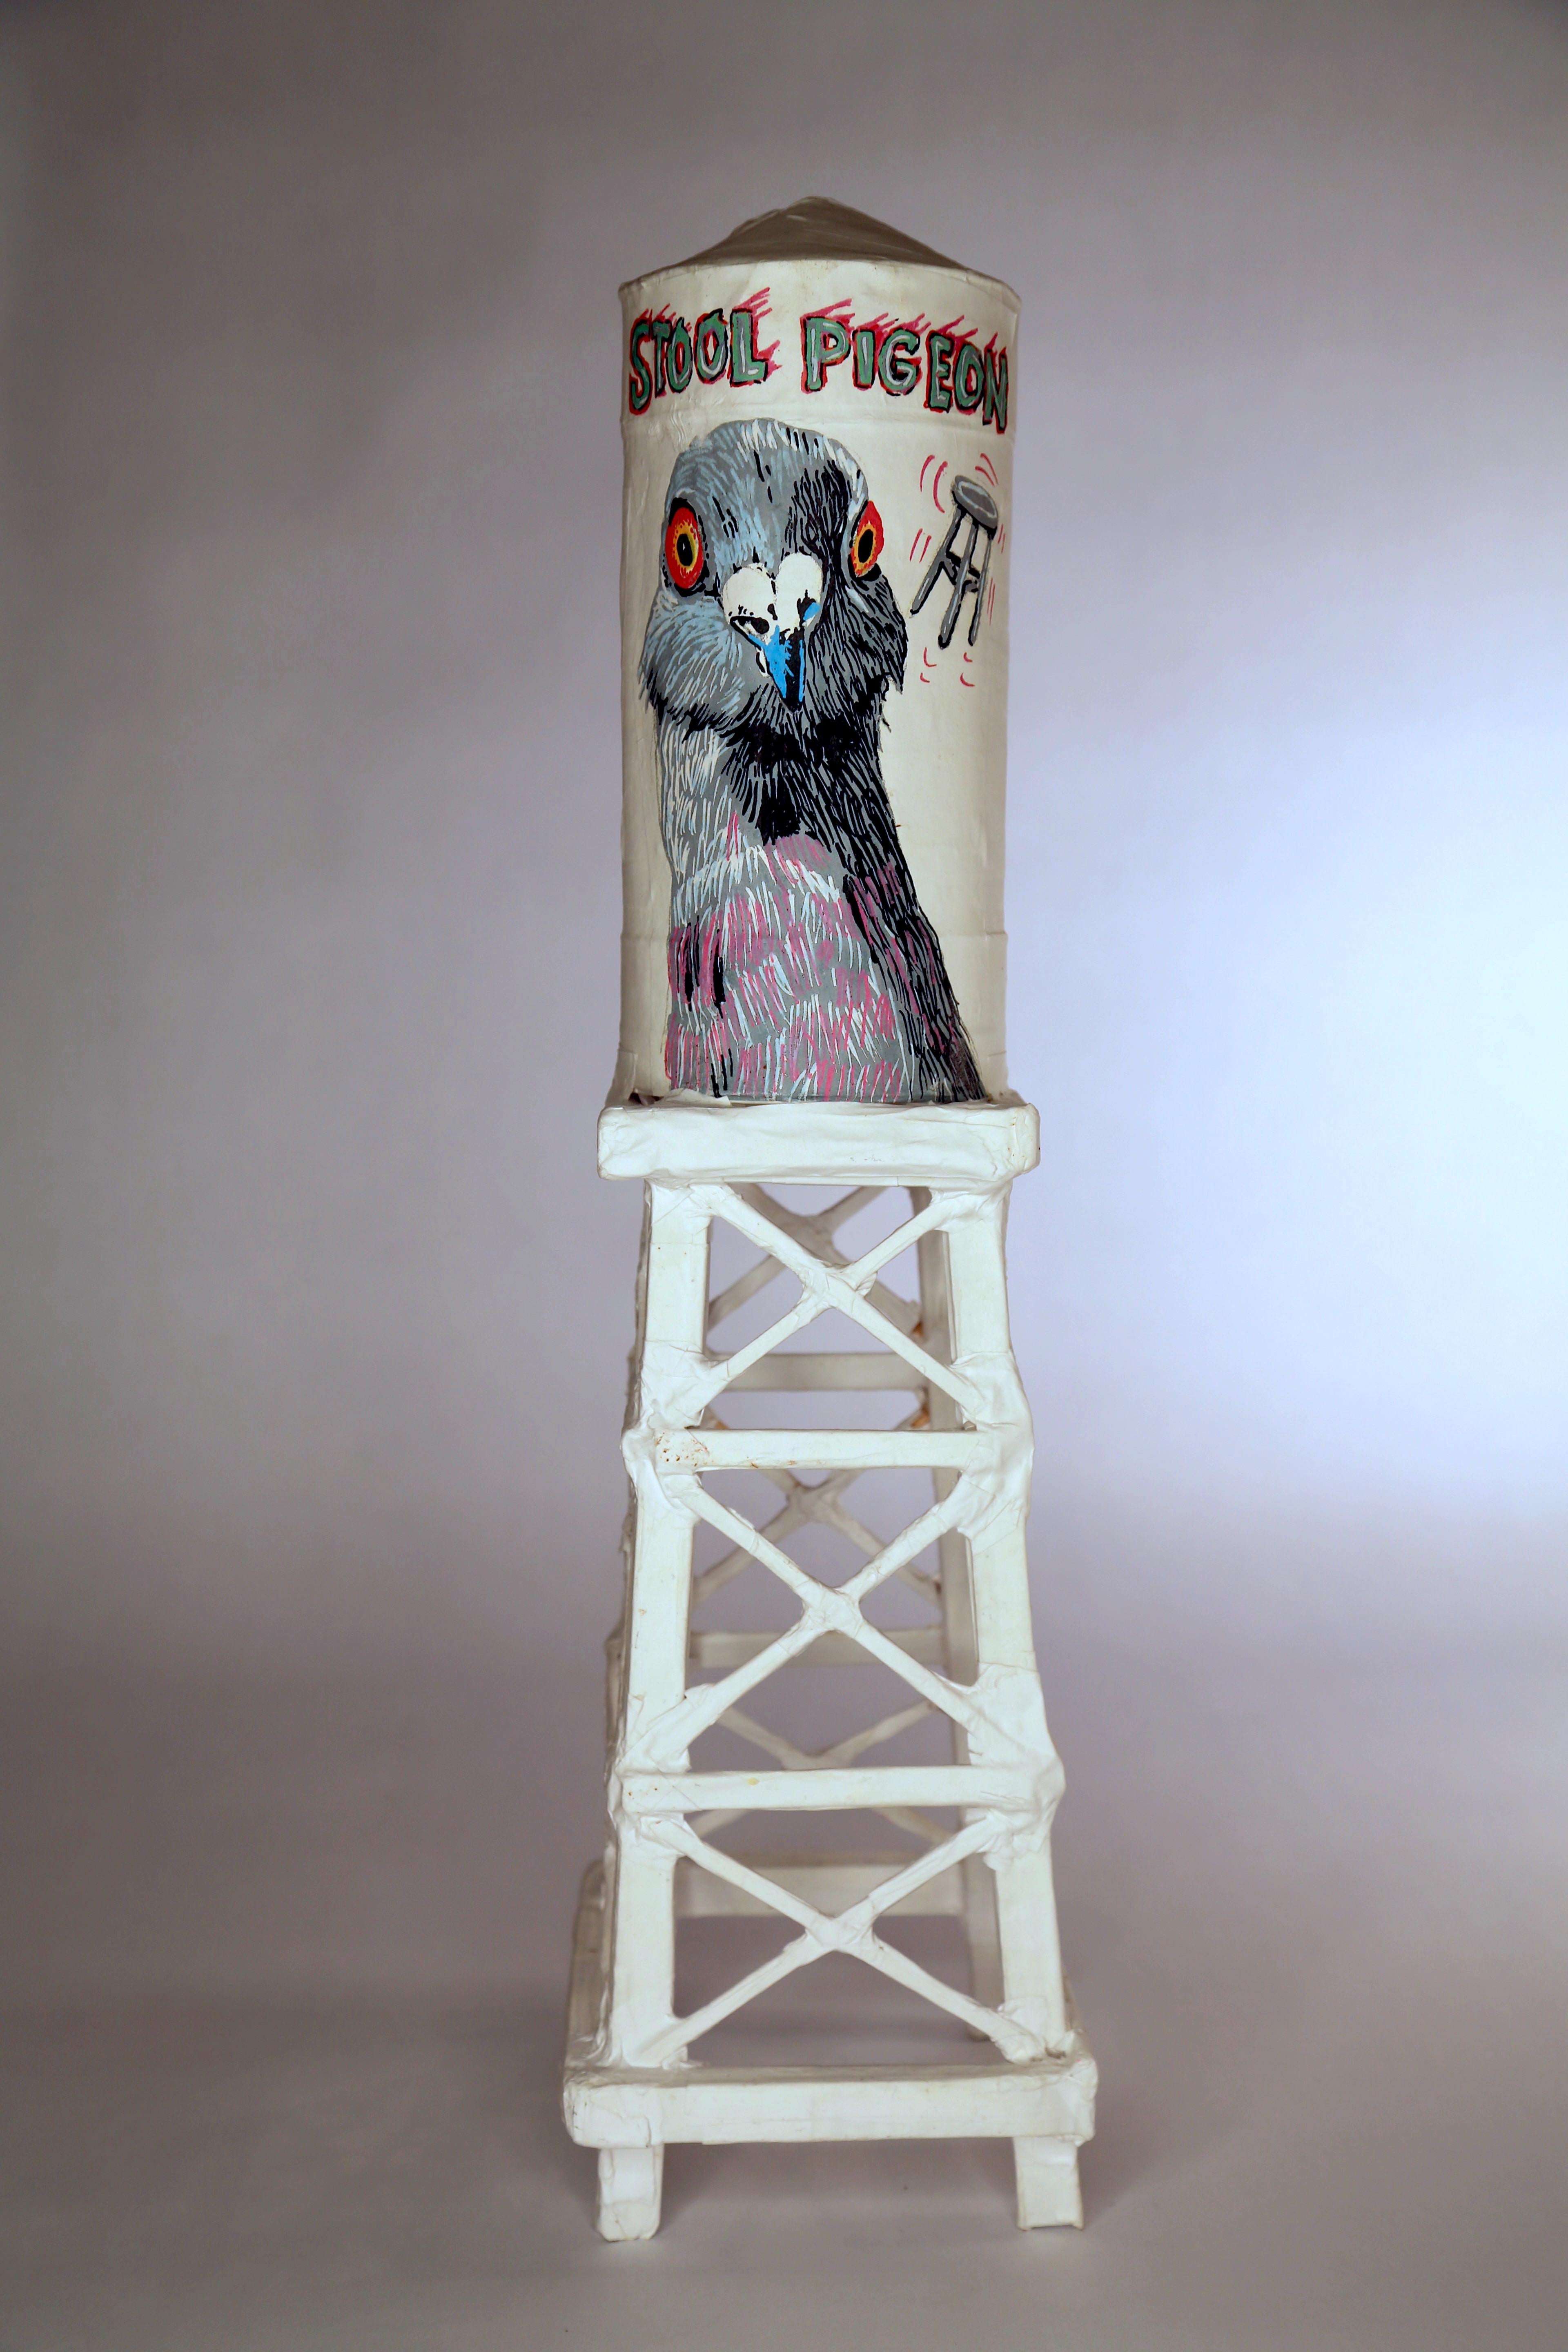 Ethan Minsker Figurative Sculpture - Water Tower Sculpture: 'Stool Pigeon'